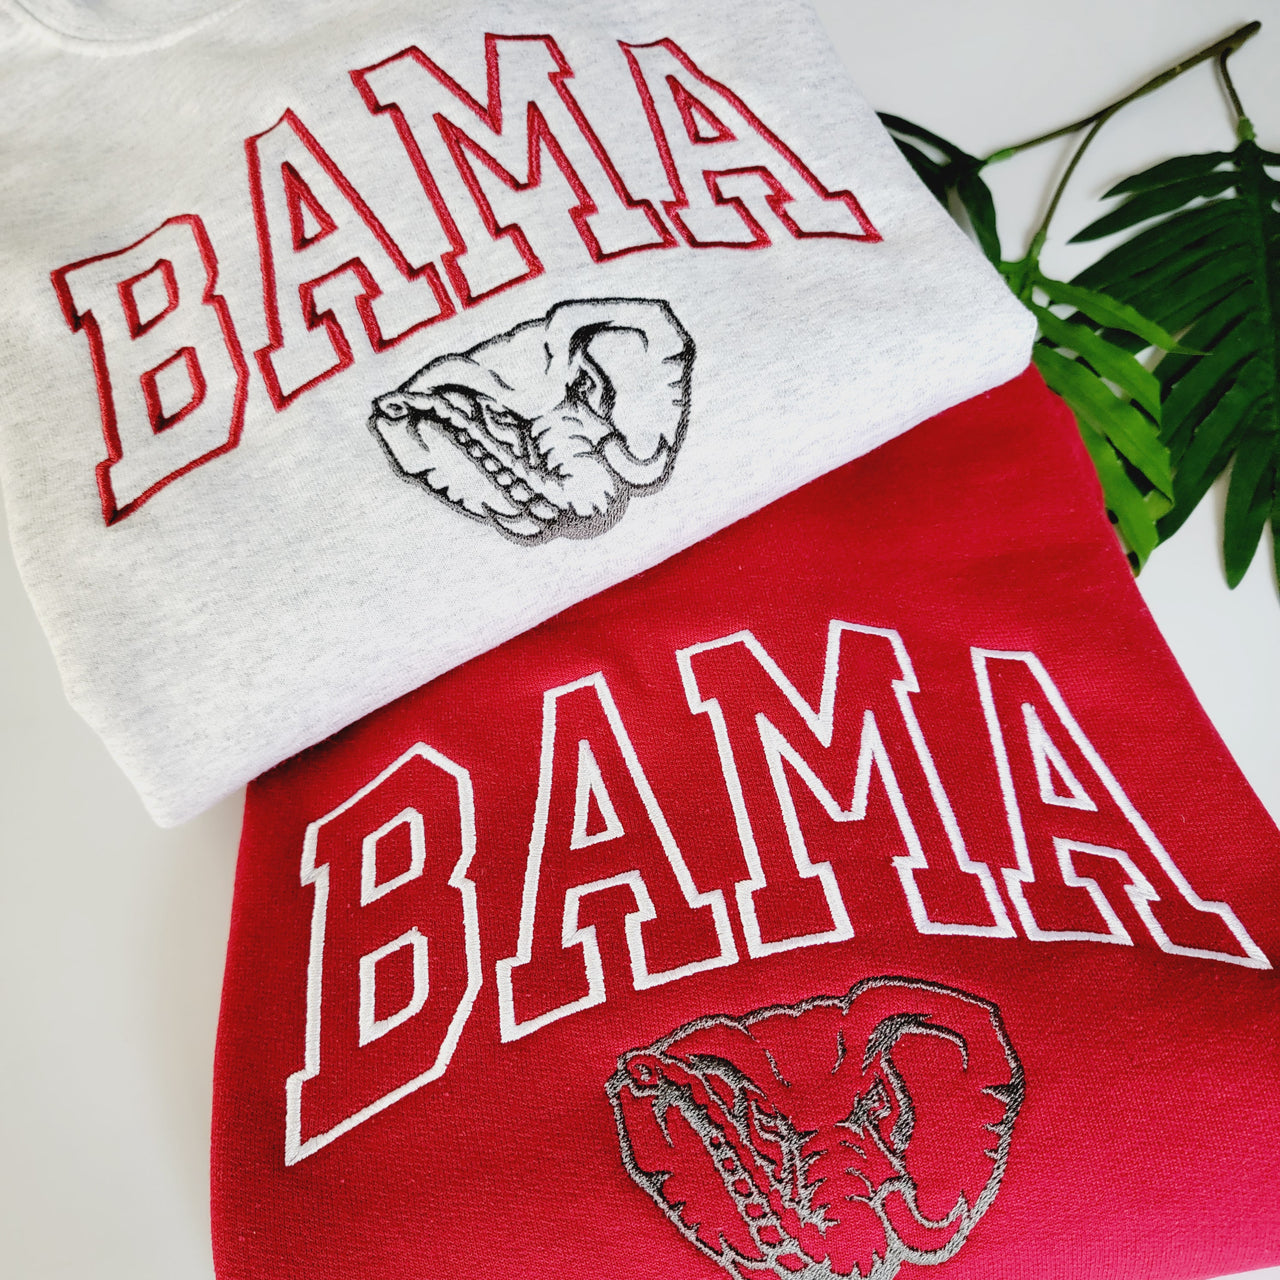 BAMA Elephant Shirt